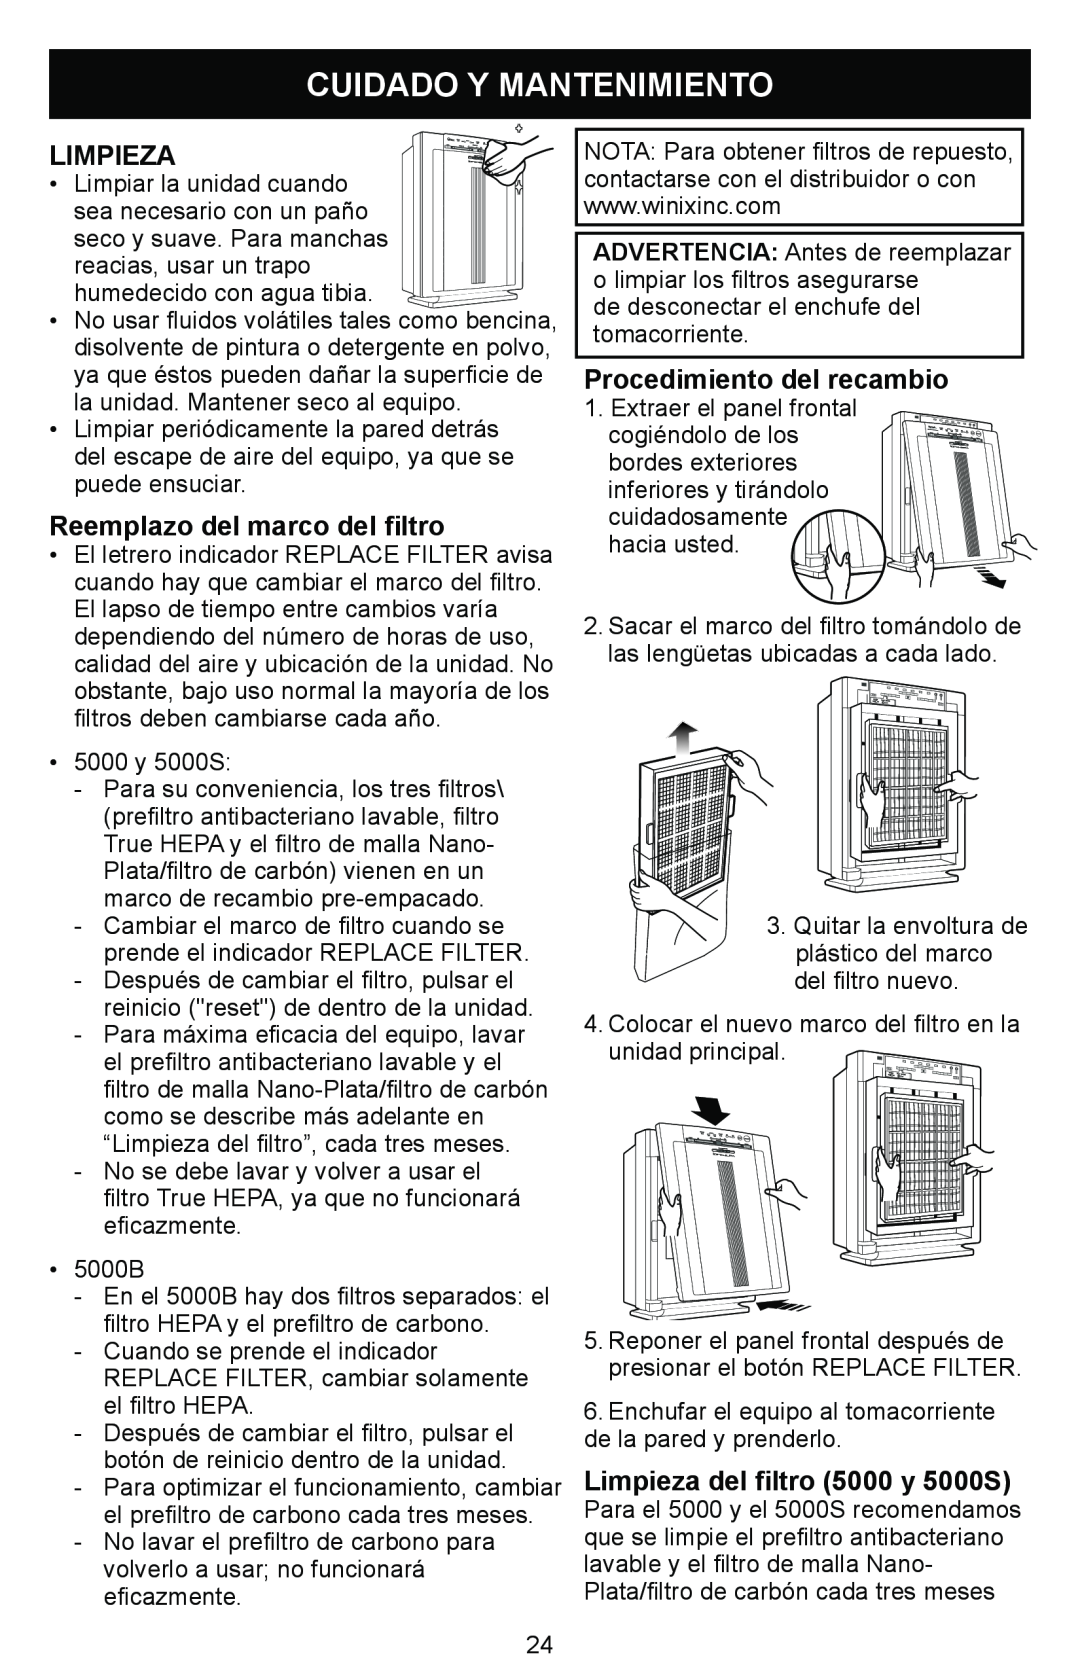 Winix Air Cleaner manual Cuidado Y Mantenimiento, Limpieza, Reemplazo del marco del filtro, Procedimiento del recambio 